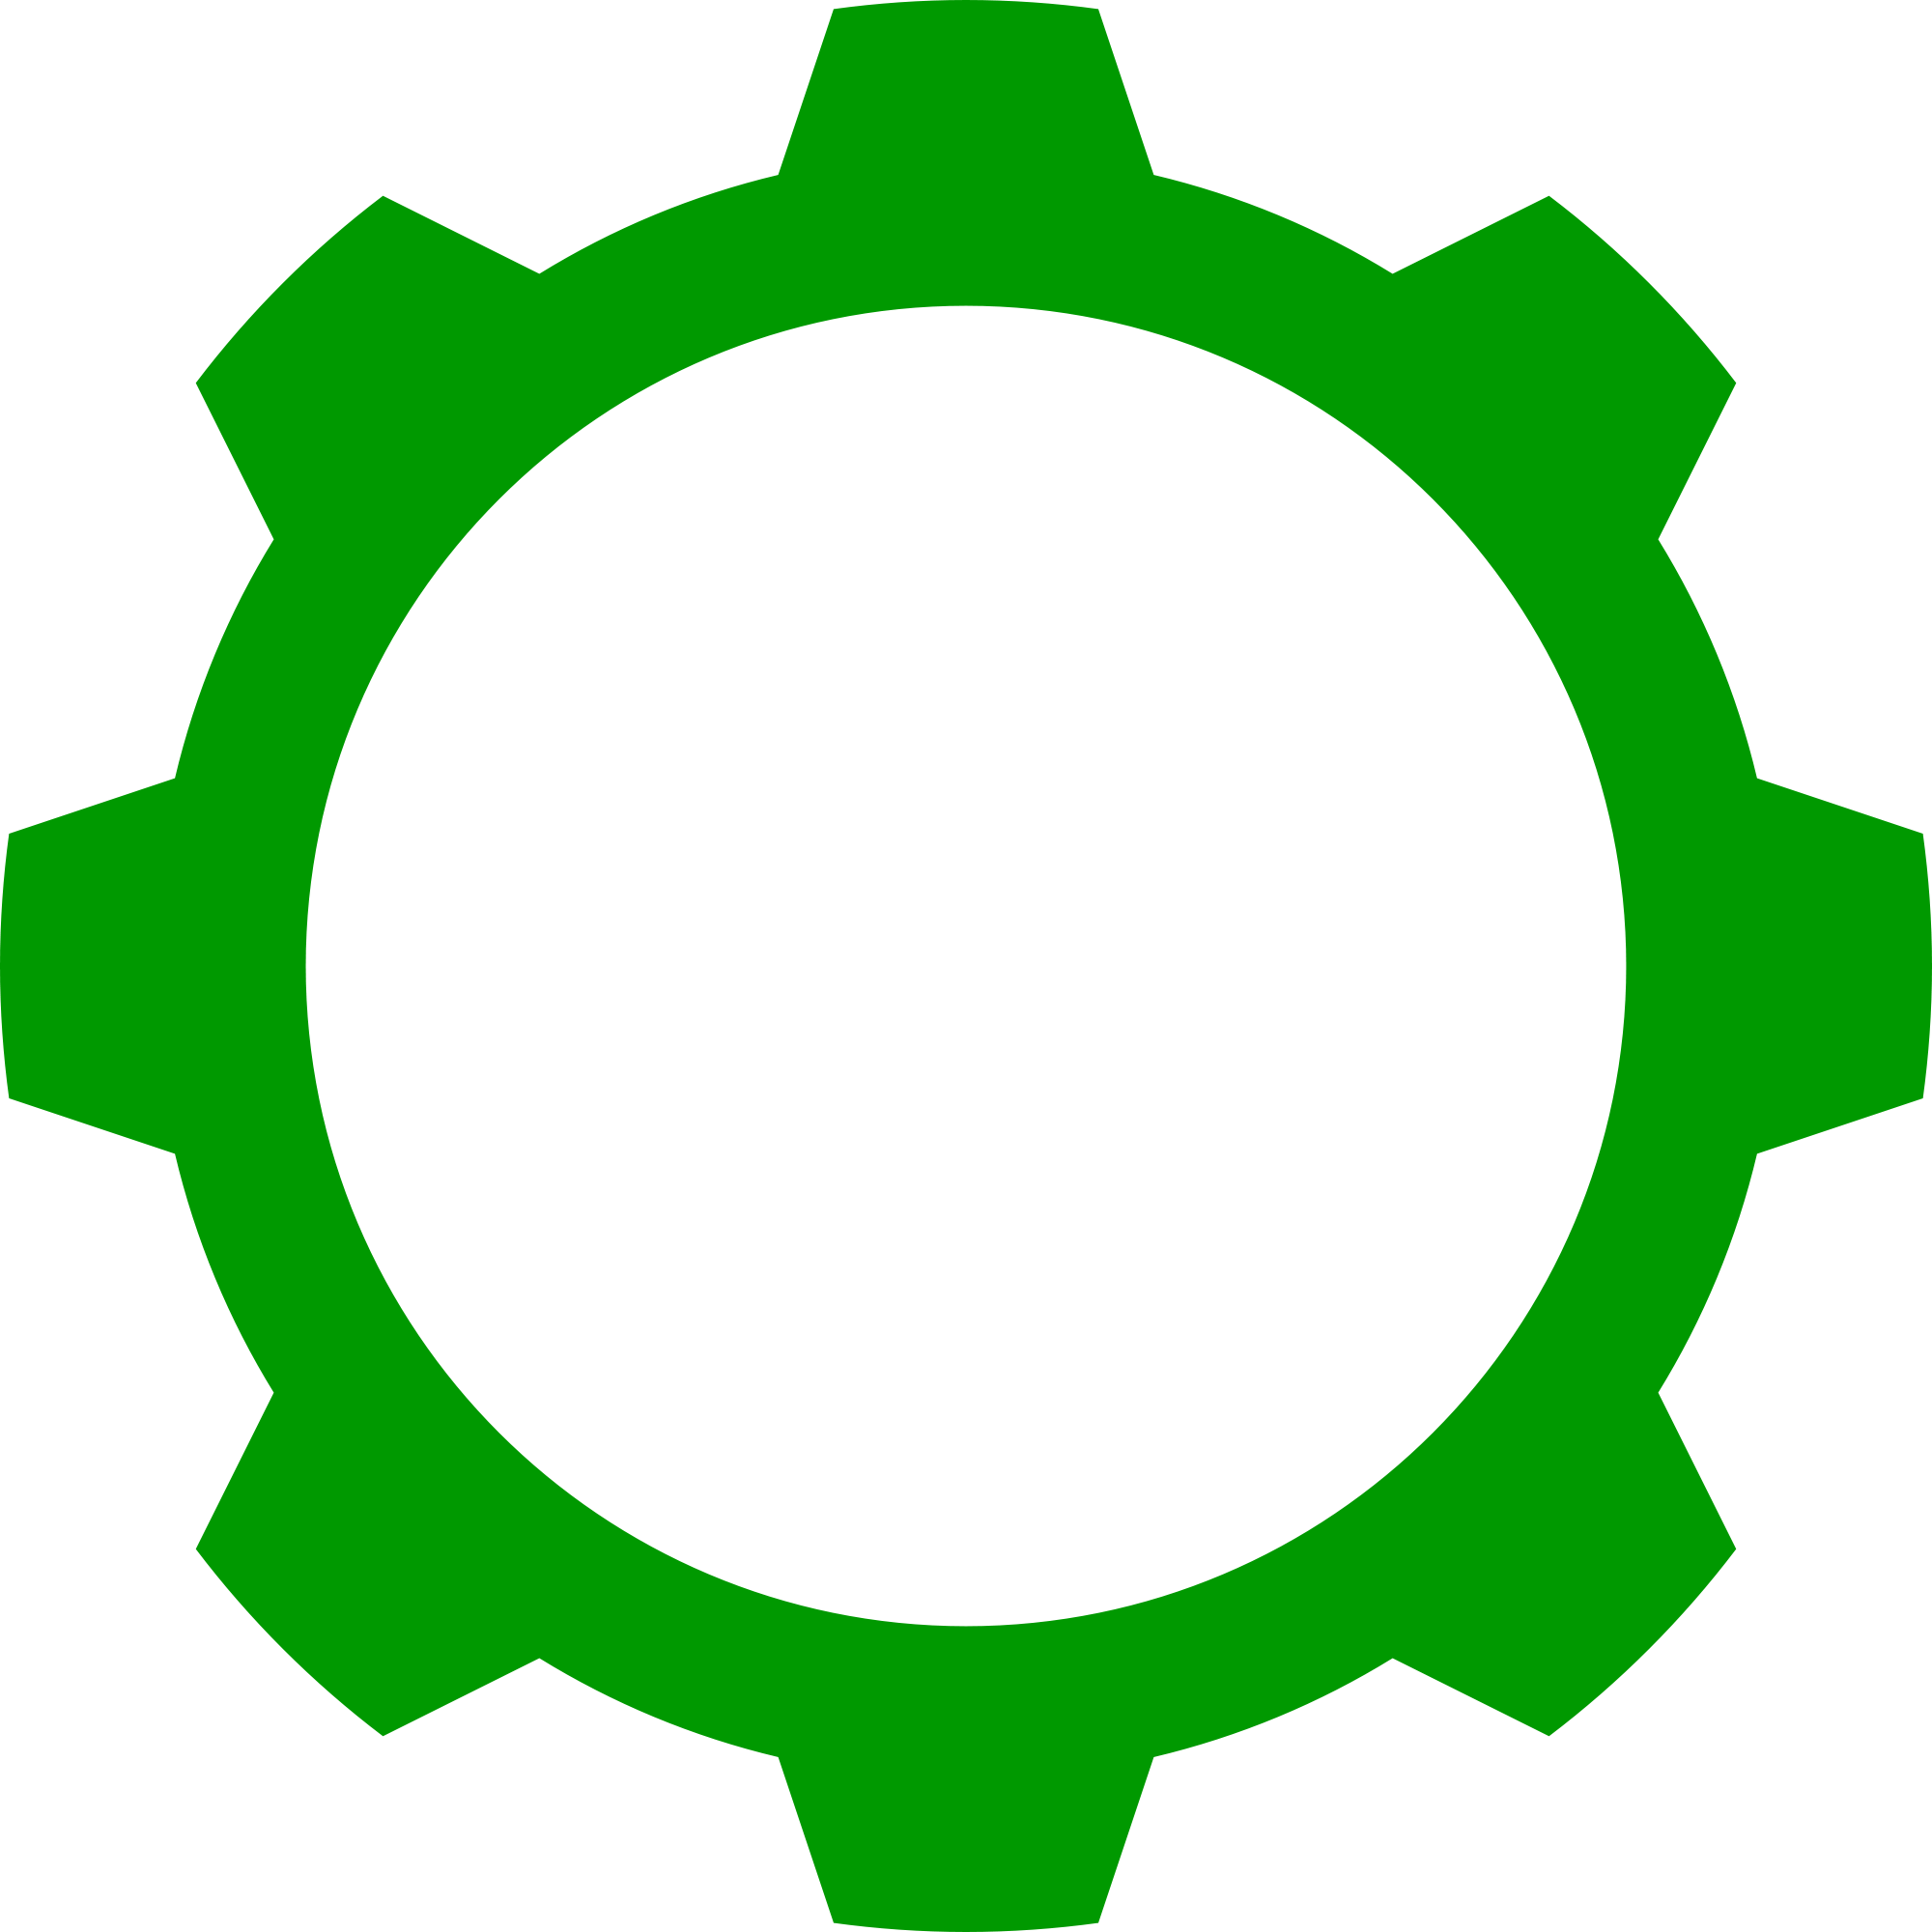 Sberusersoft. Шестеренка. Шестерня логотип. Шестеренка пиктограмма. Значок шестеренки зеленая.